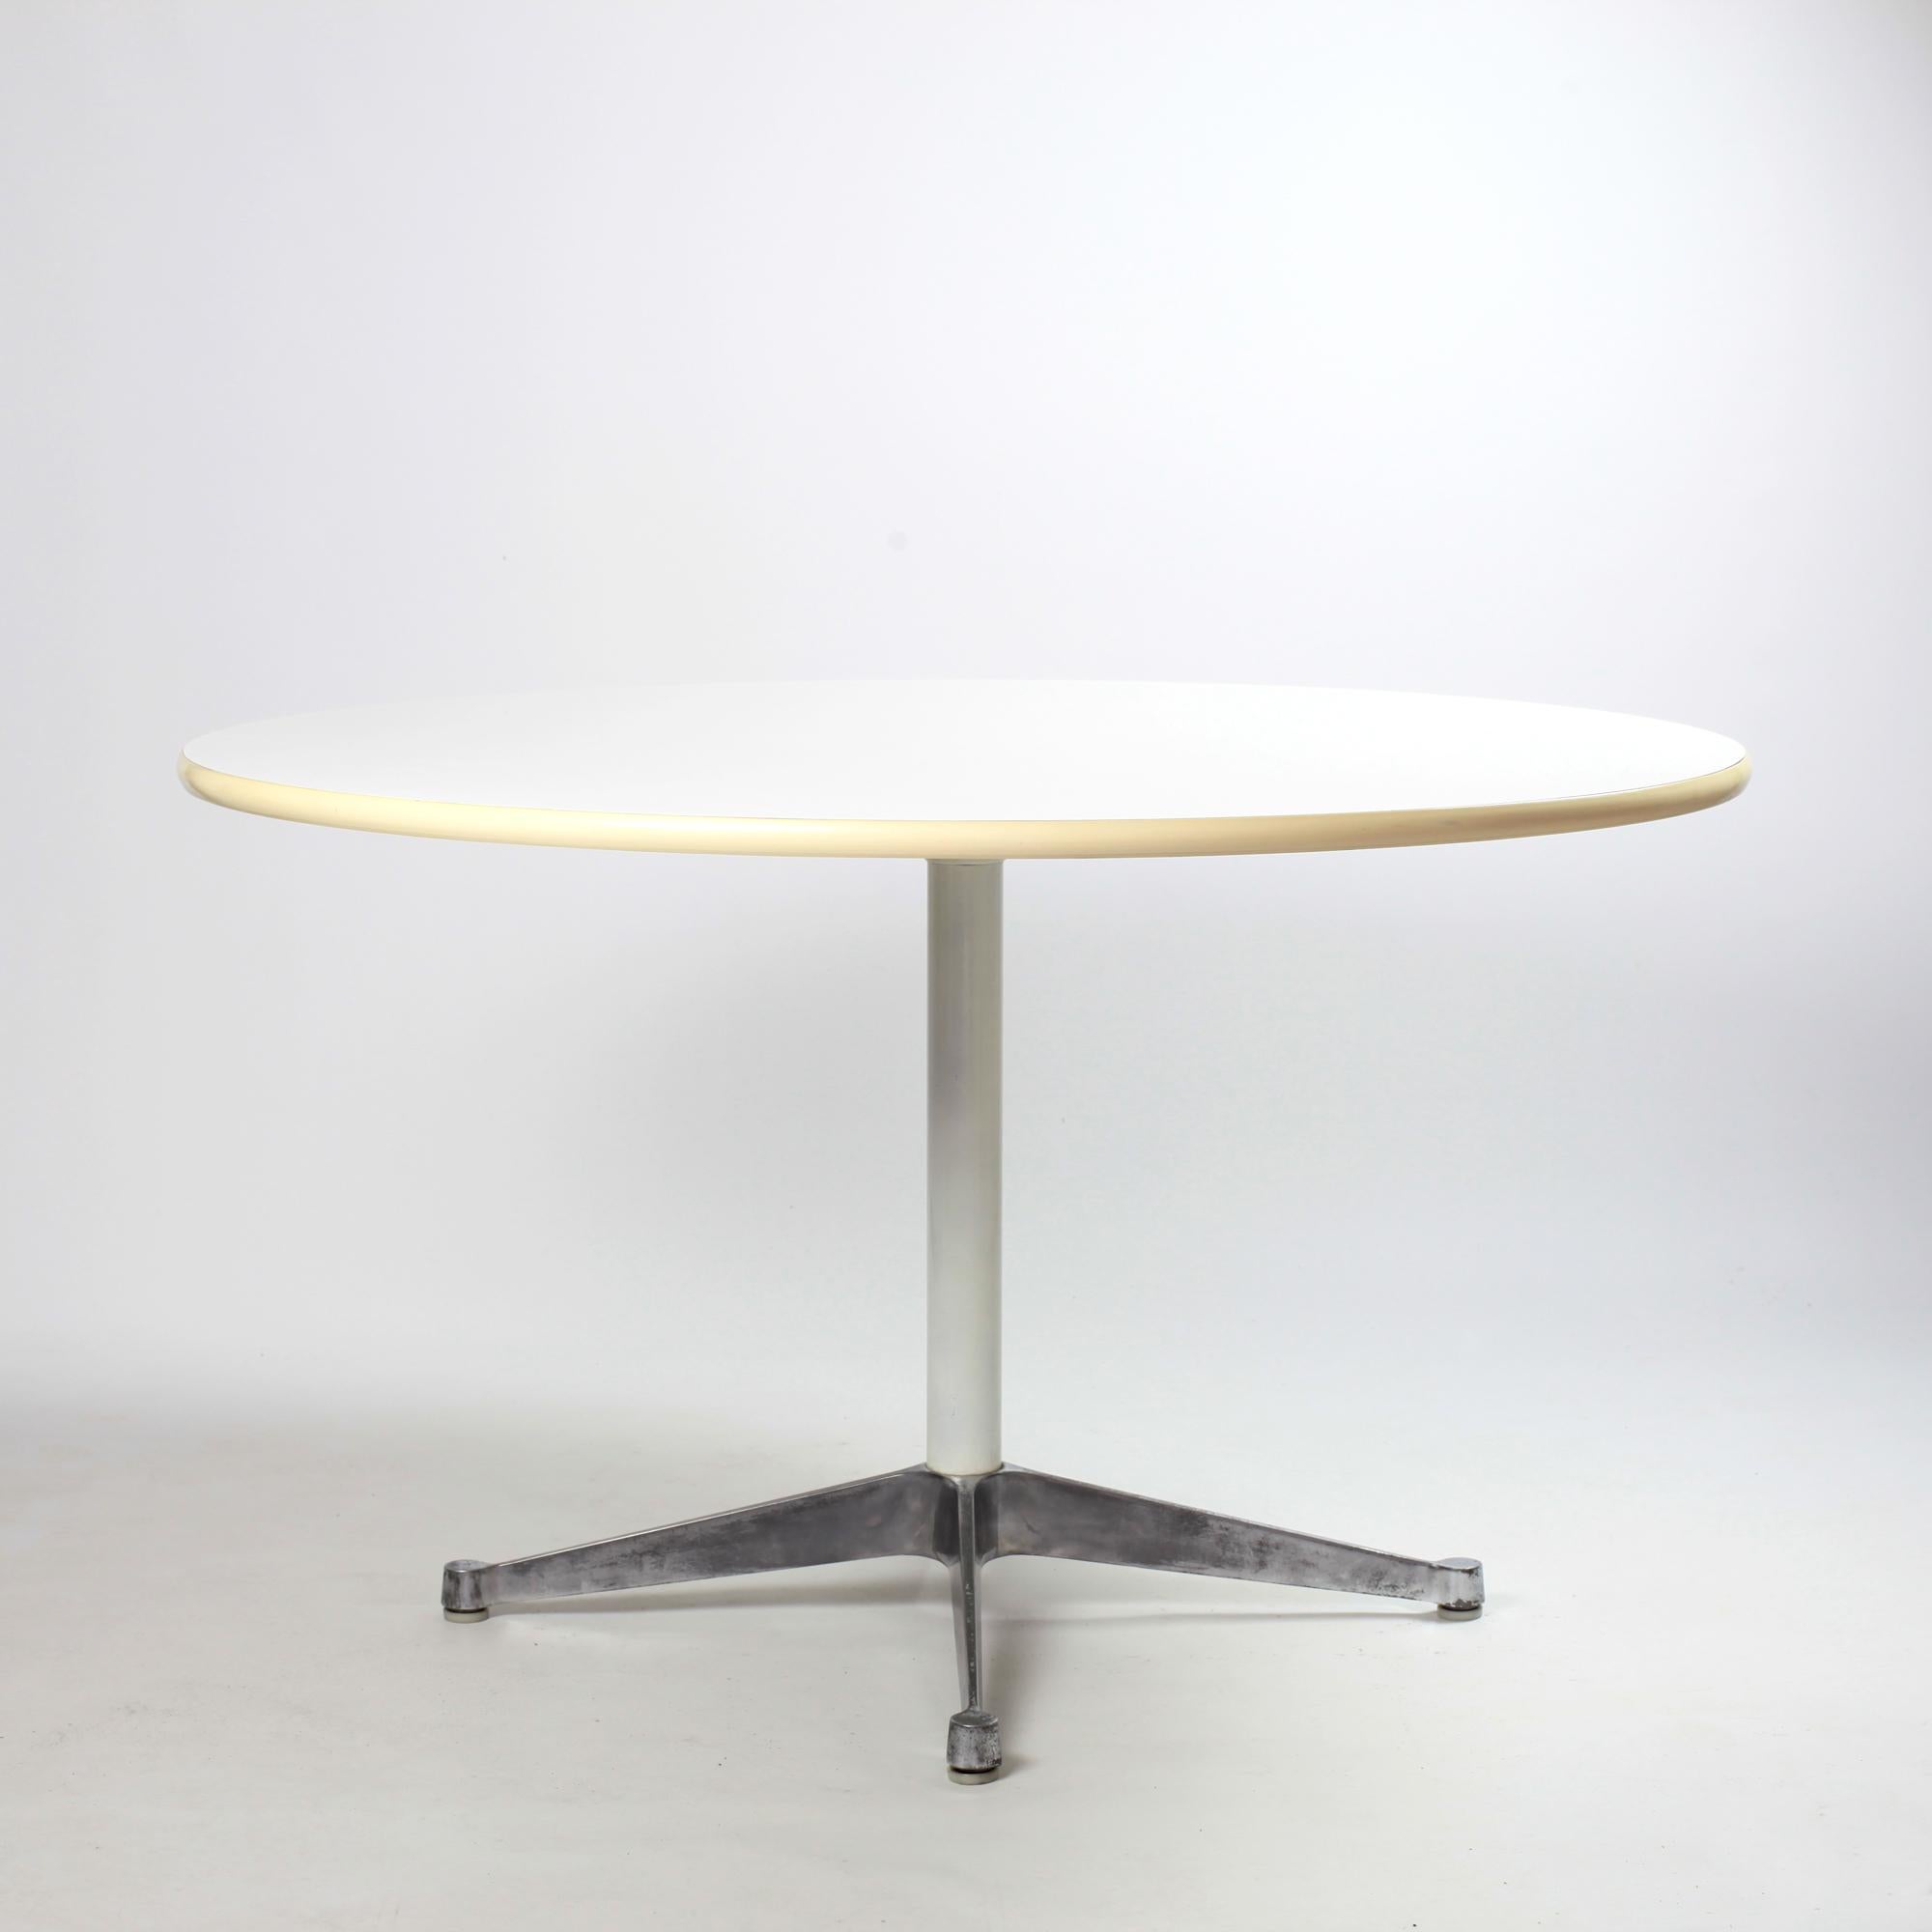 Magnifique table de salle à manger avec base en contrat de Charles et Ray Eames pour Herman Miller. 
La table est composée d'une base en aluminium et d'un plateau en formica blanc encadré d'un bord en caoutchouc. 
Très bon état vintage.